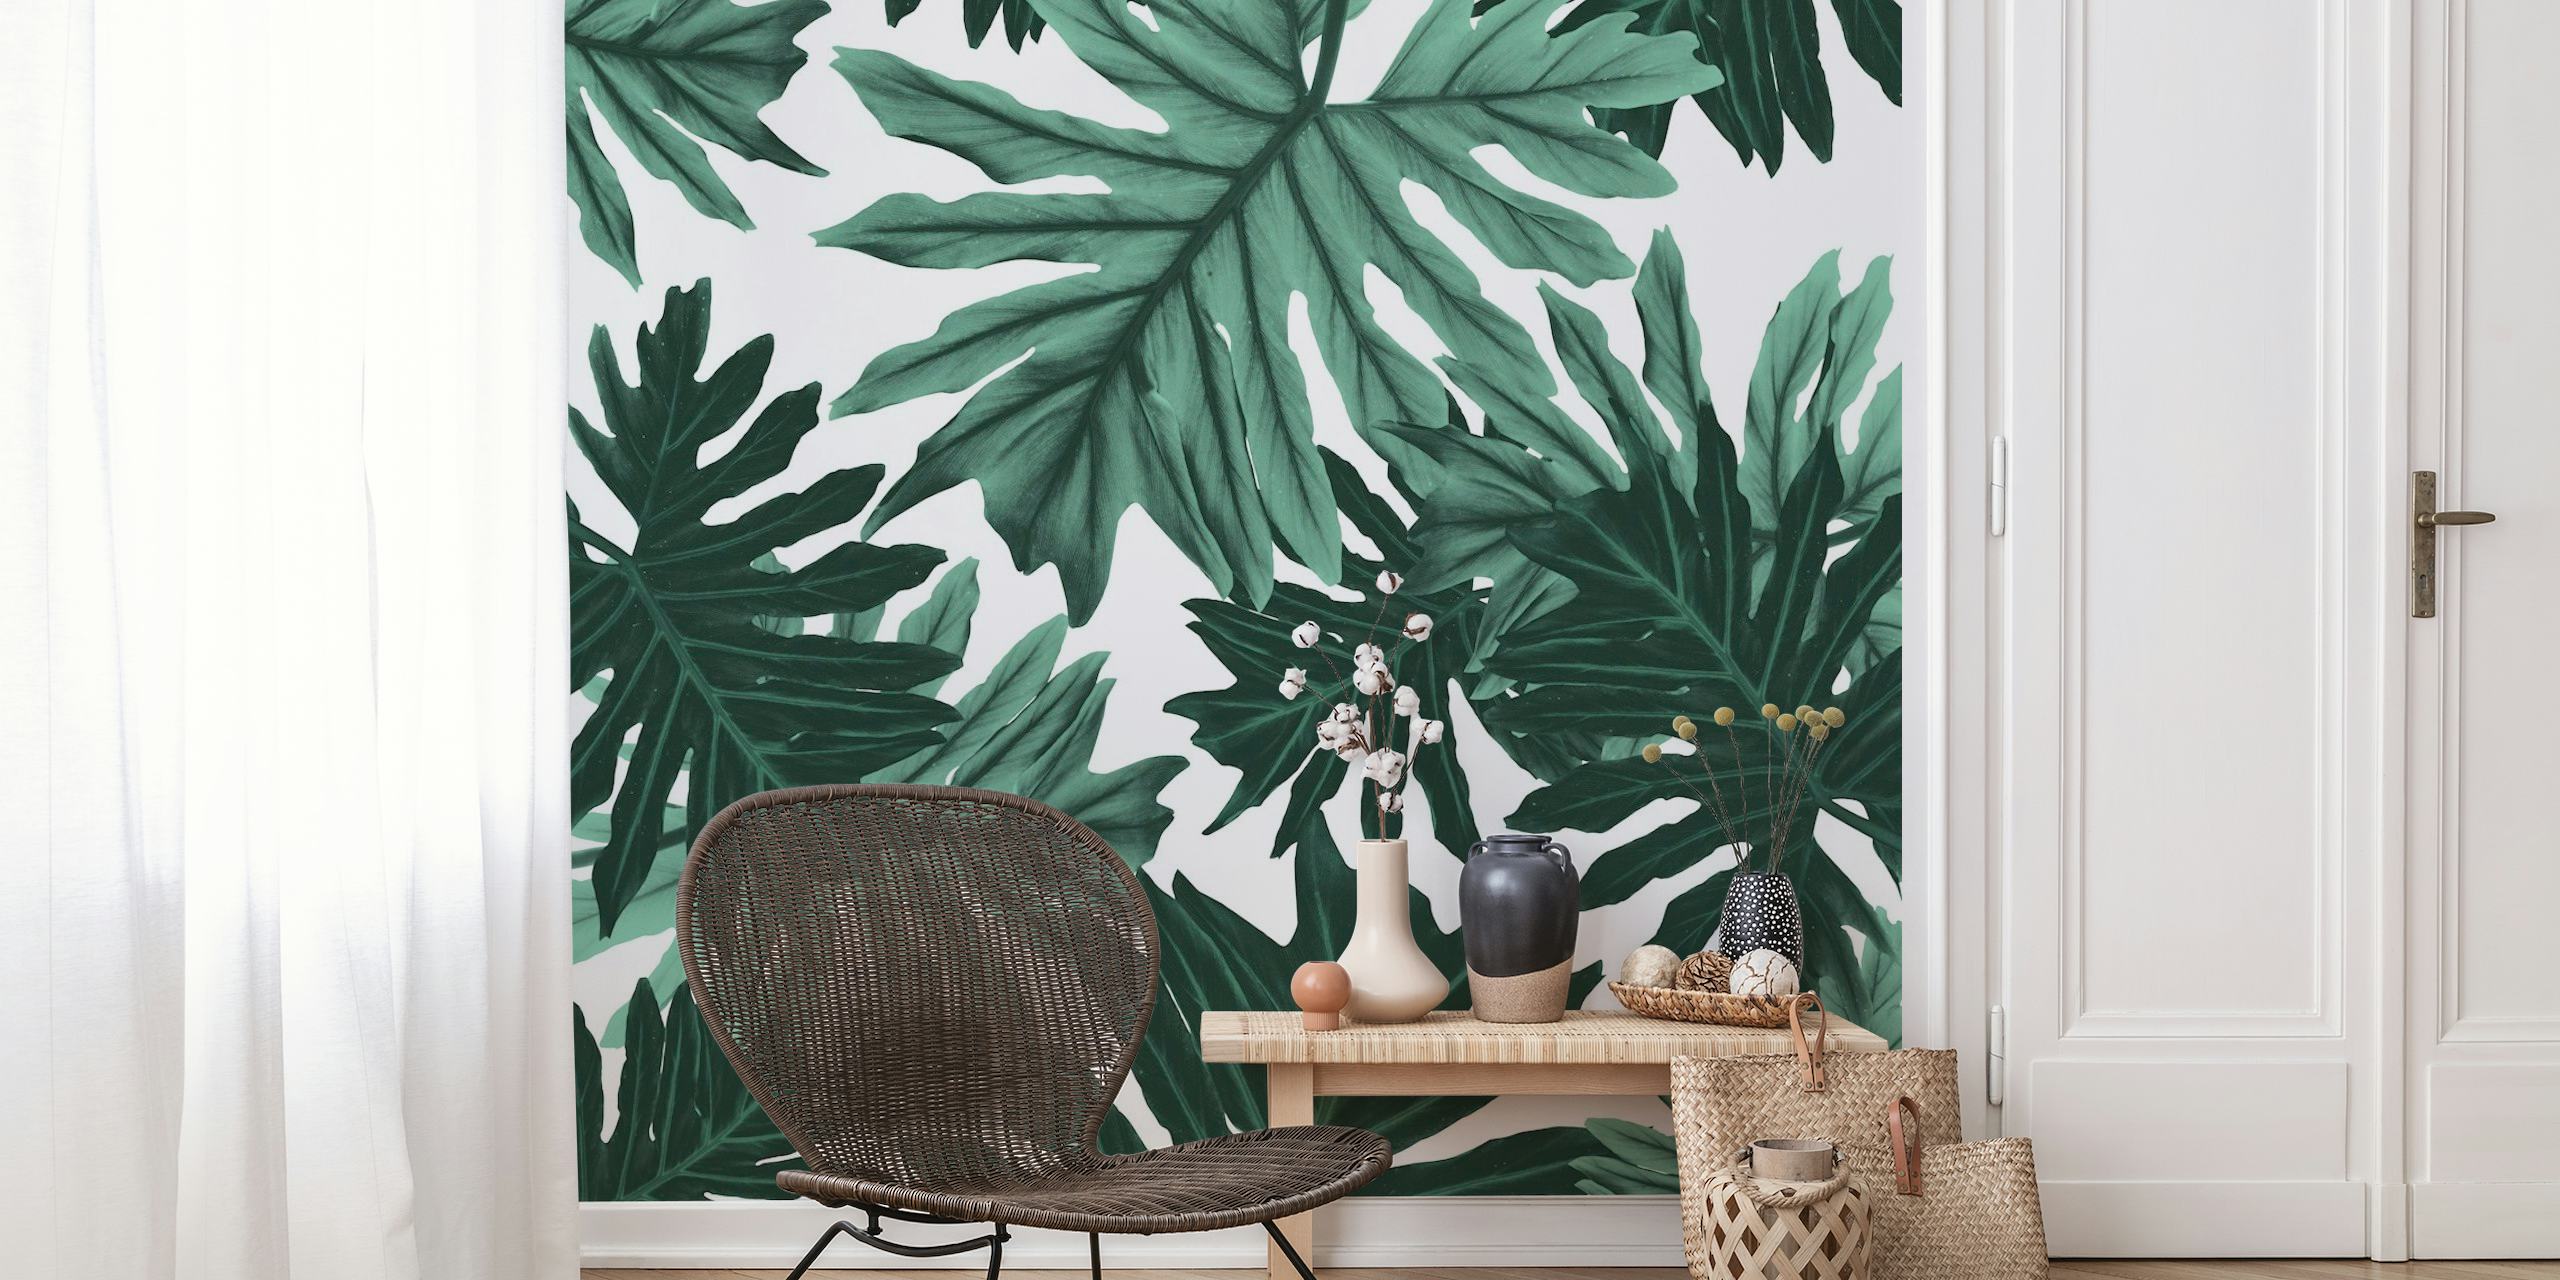 Fototapet med tropiska djungelblad i gröna nyanser, Philo Hope Tropical Jungle 6-design för en naturinspirerad inredning.